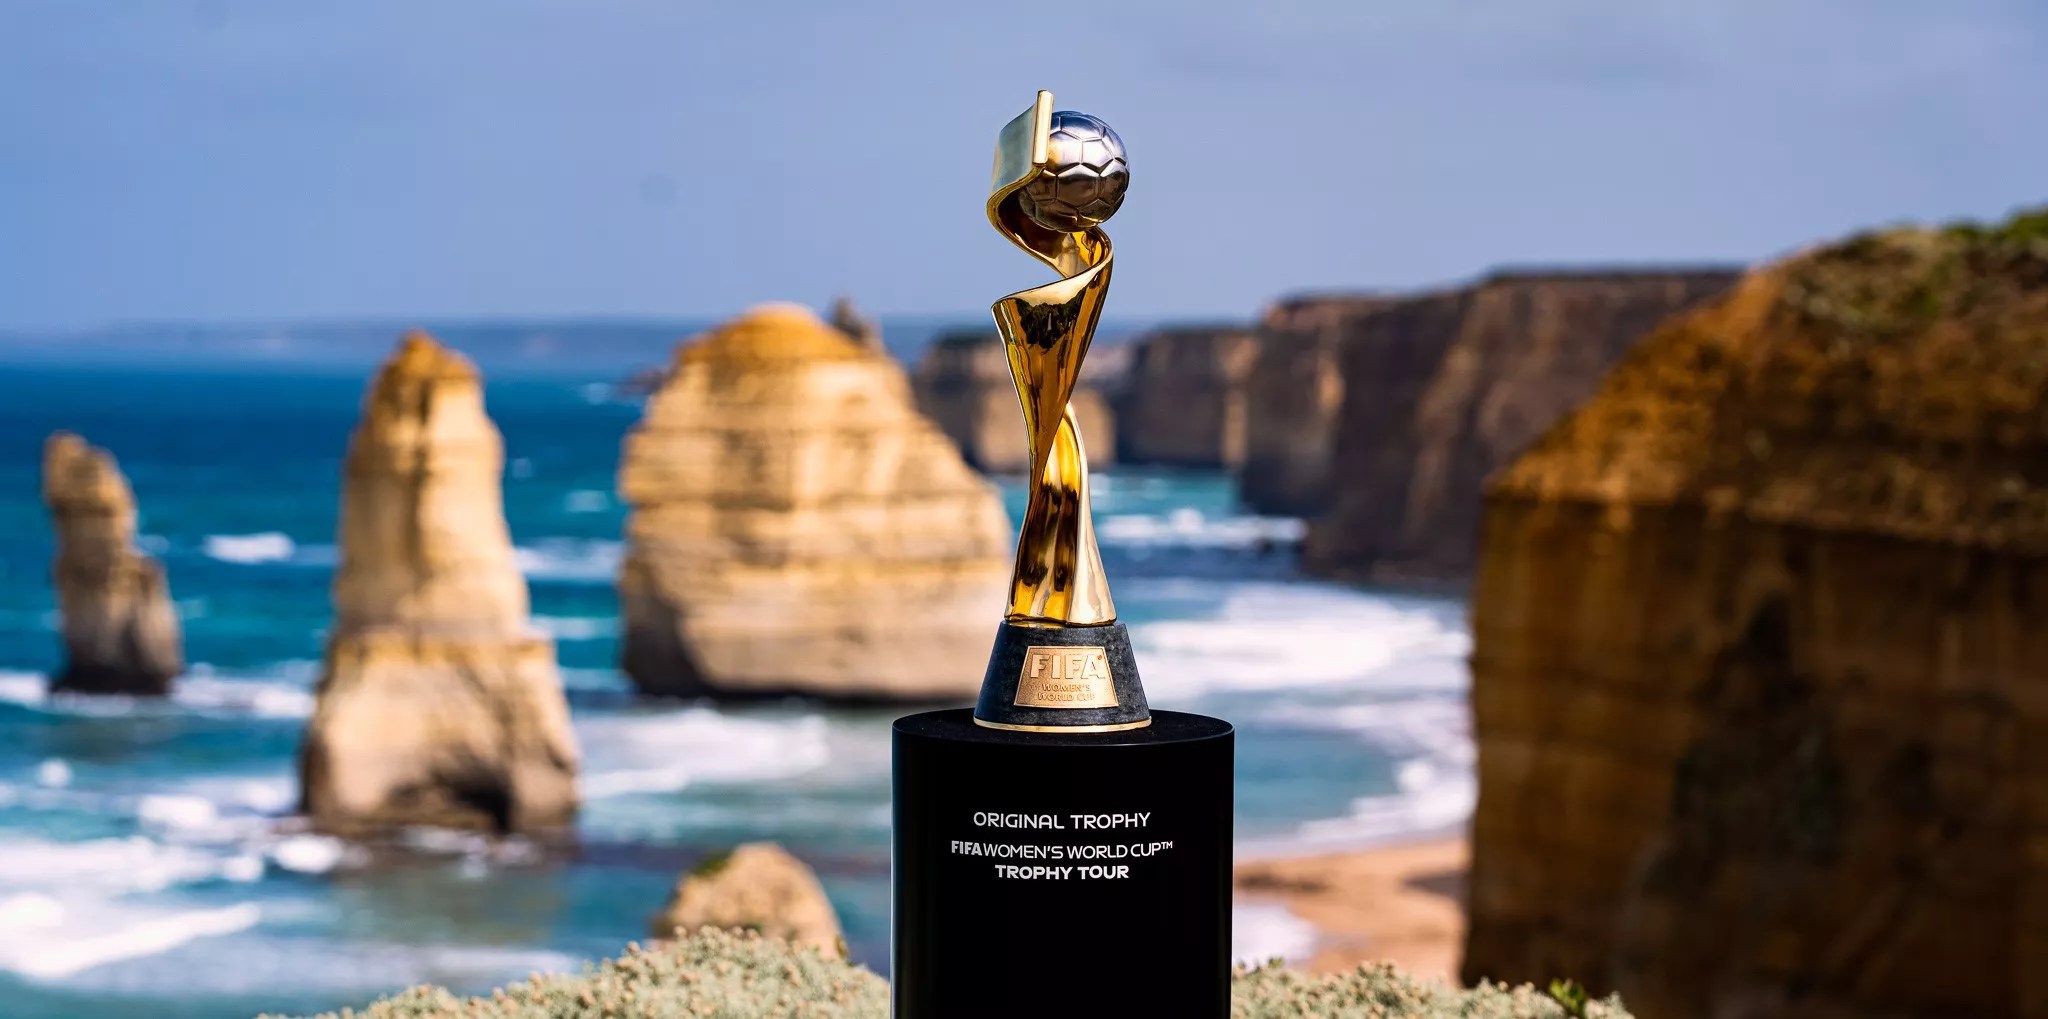 Kỷ lục 1 triệu vé được bán ra ở Úc và Newzealand, nhưng vẫn chưa có chương trình phát sóng Giải vô địch bóng đá nữ thế giới 2023 nào cho 5 quốc gia hàng đầu châu Âu.